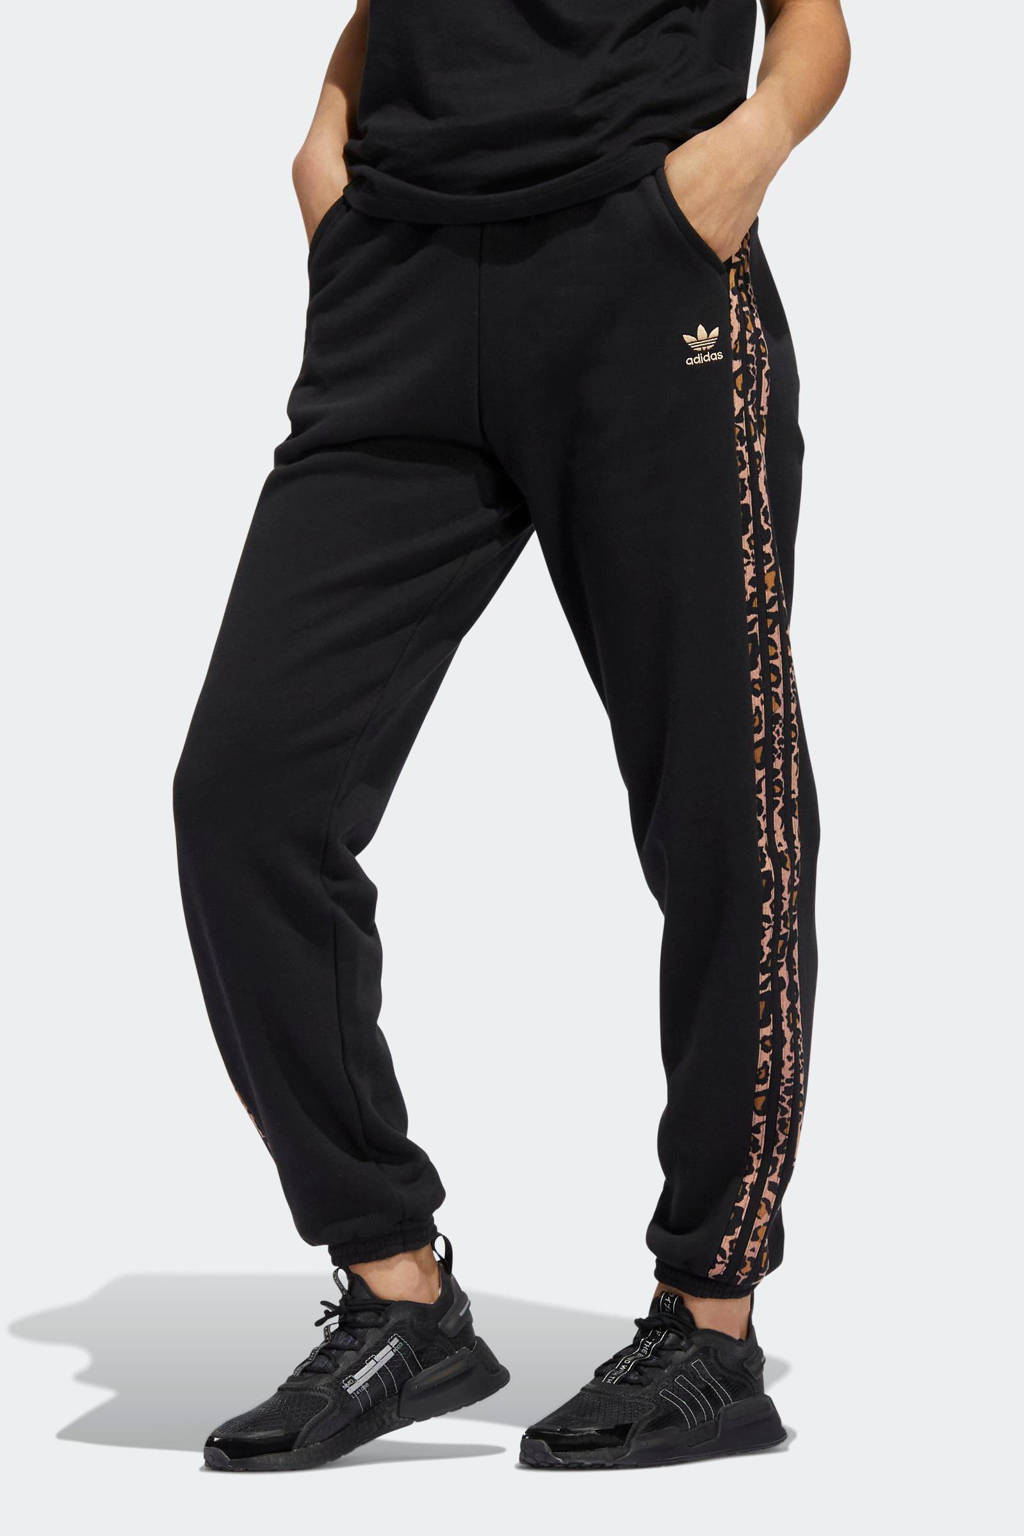 Keelholte dynamisch hoogte adidas Originals Adicolor joggingbroek zwart/tijgerprint | wehkamp